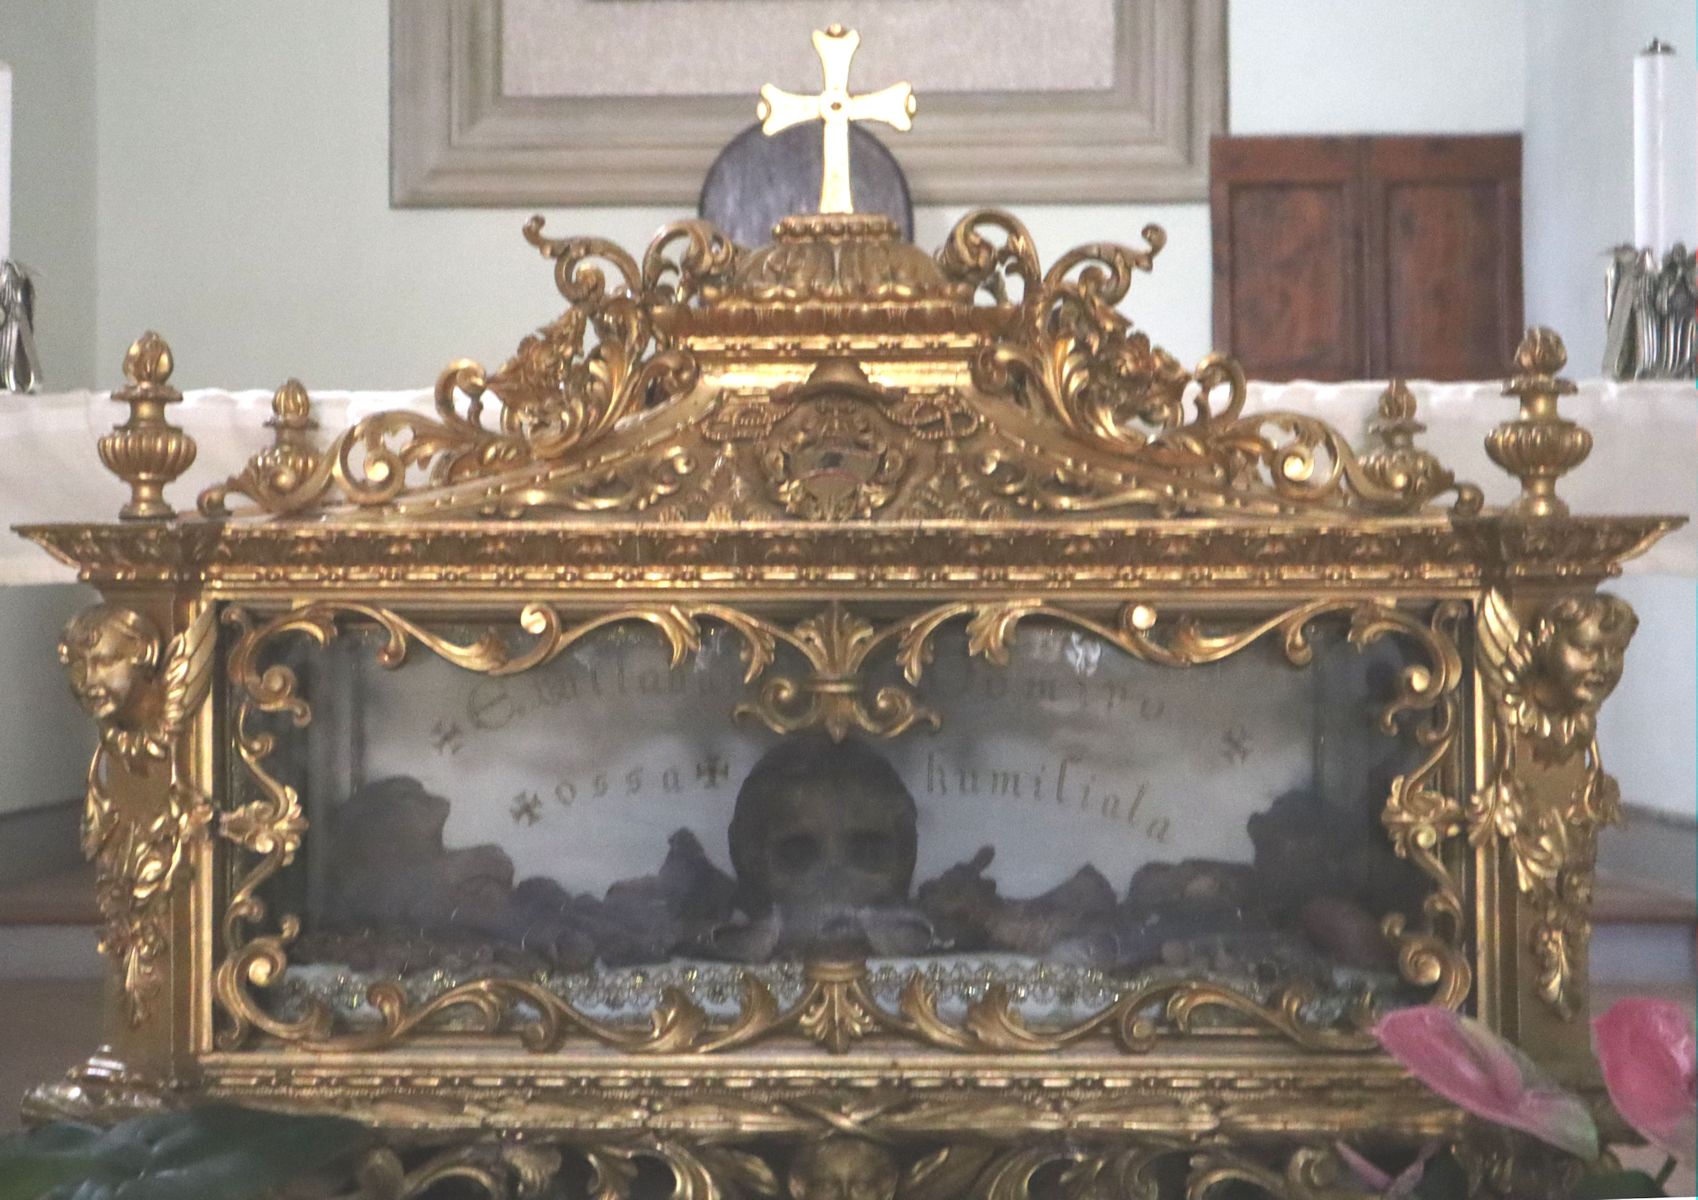 Allucius' Reliquien in der Kathedrale in Pescia